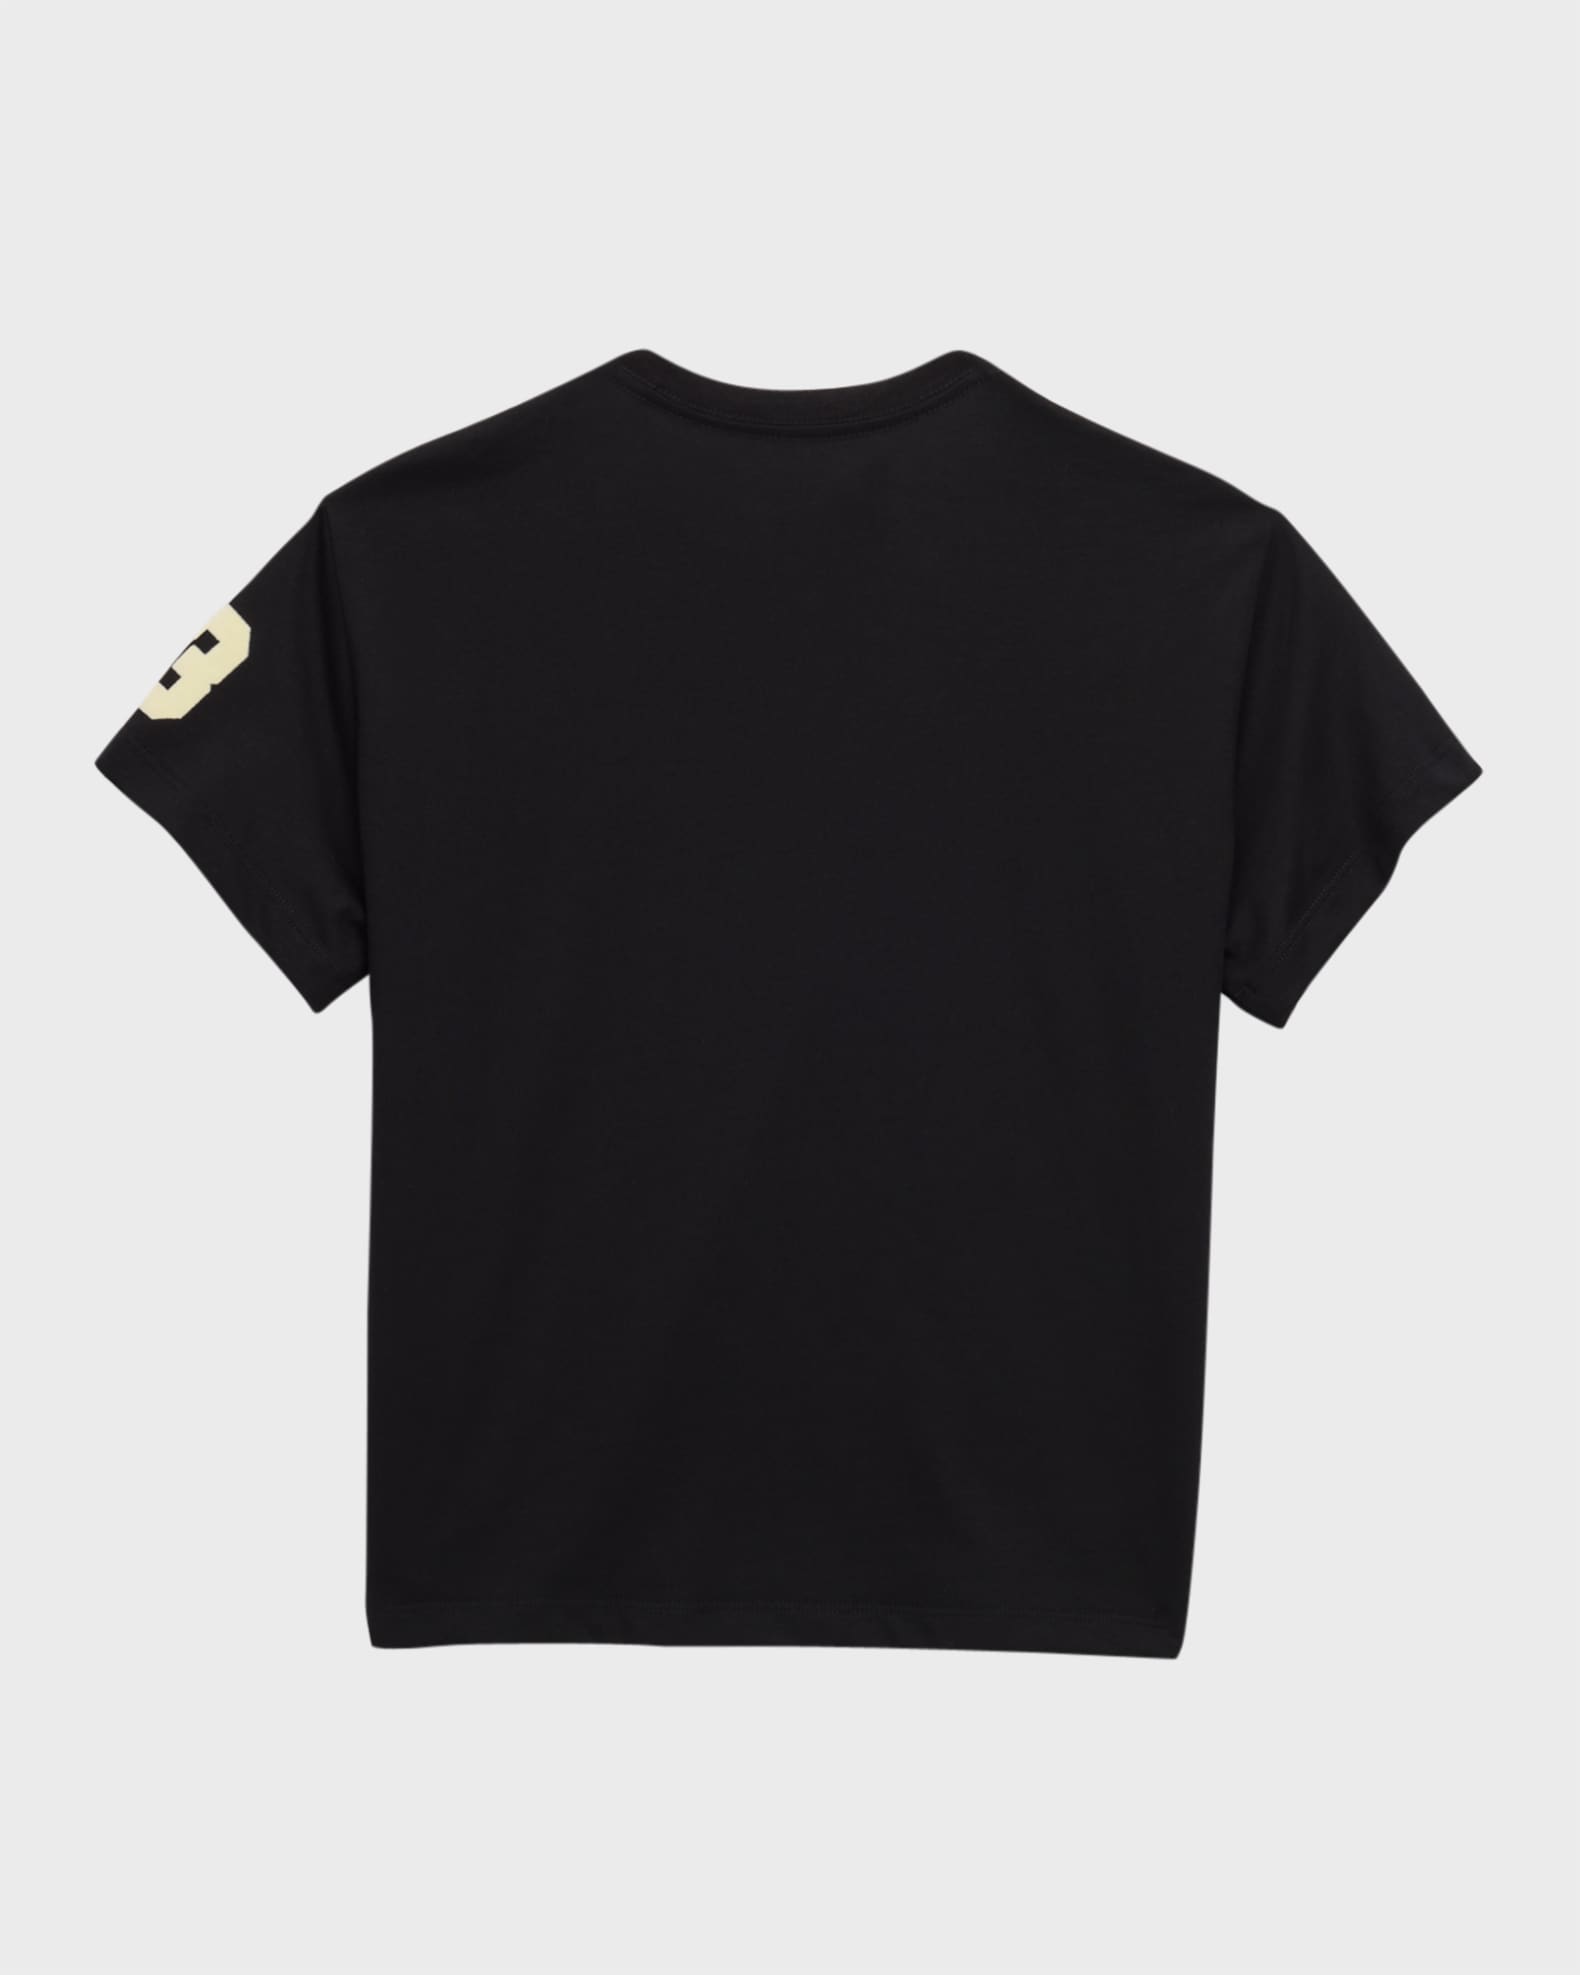 Louis Vuitton Mens T shirt Planes Design limited edition size